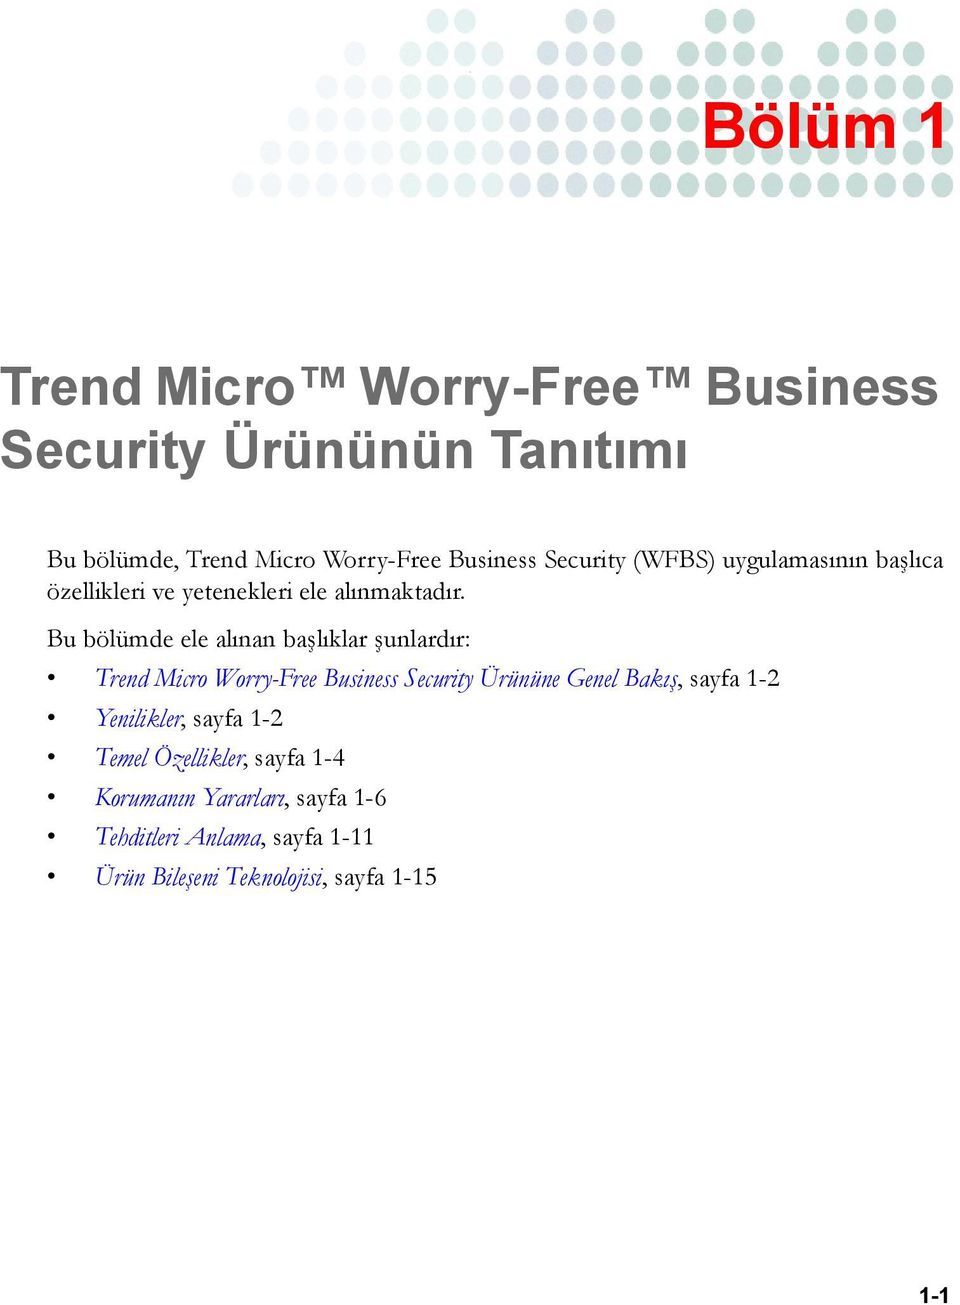 Bu bölümde ele alınan başlıklar şunlardır: Trend Micro Worry-Free Business Security Ürününe Genel Bakış, sayfa 1-2